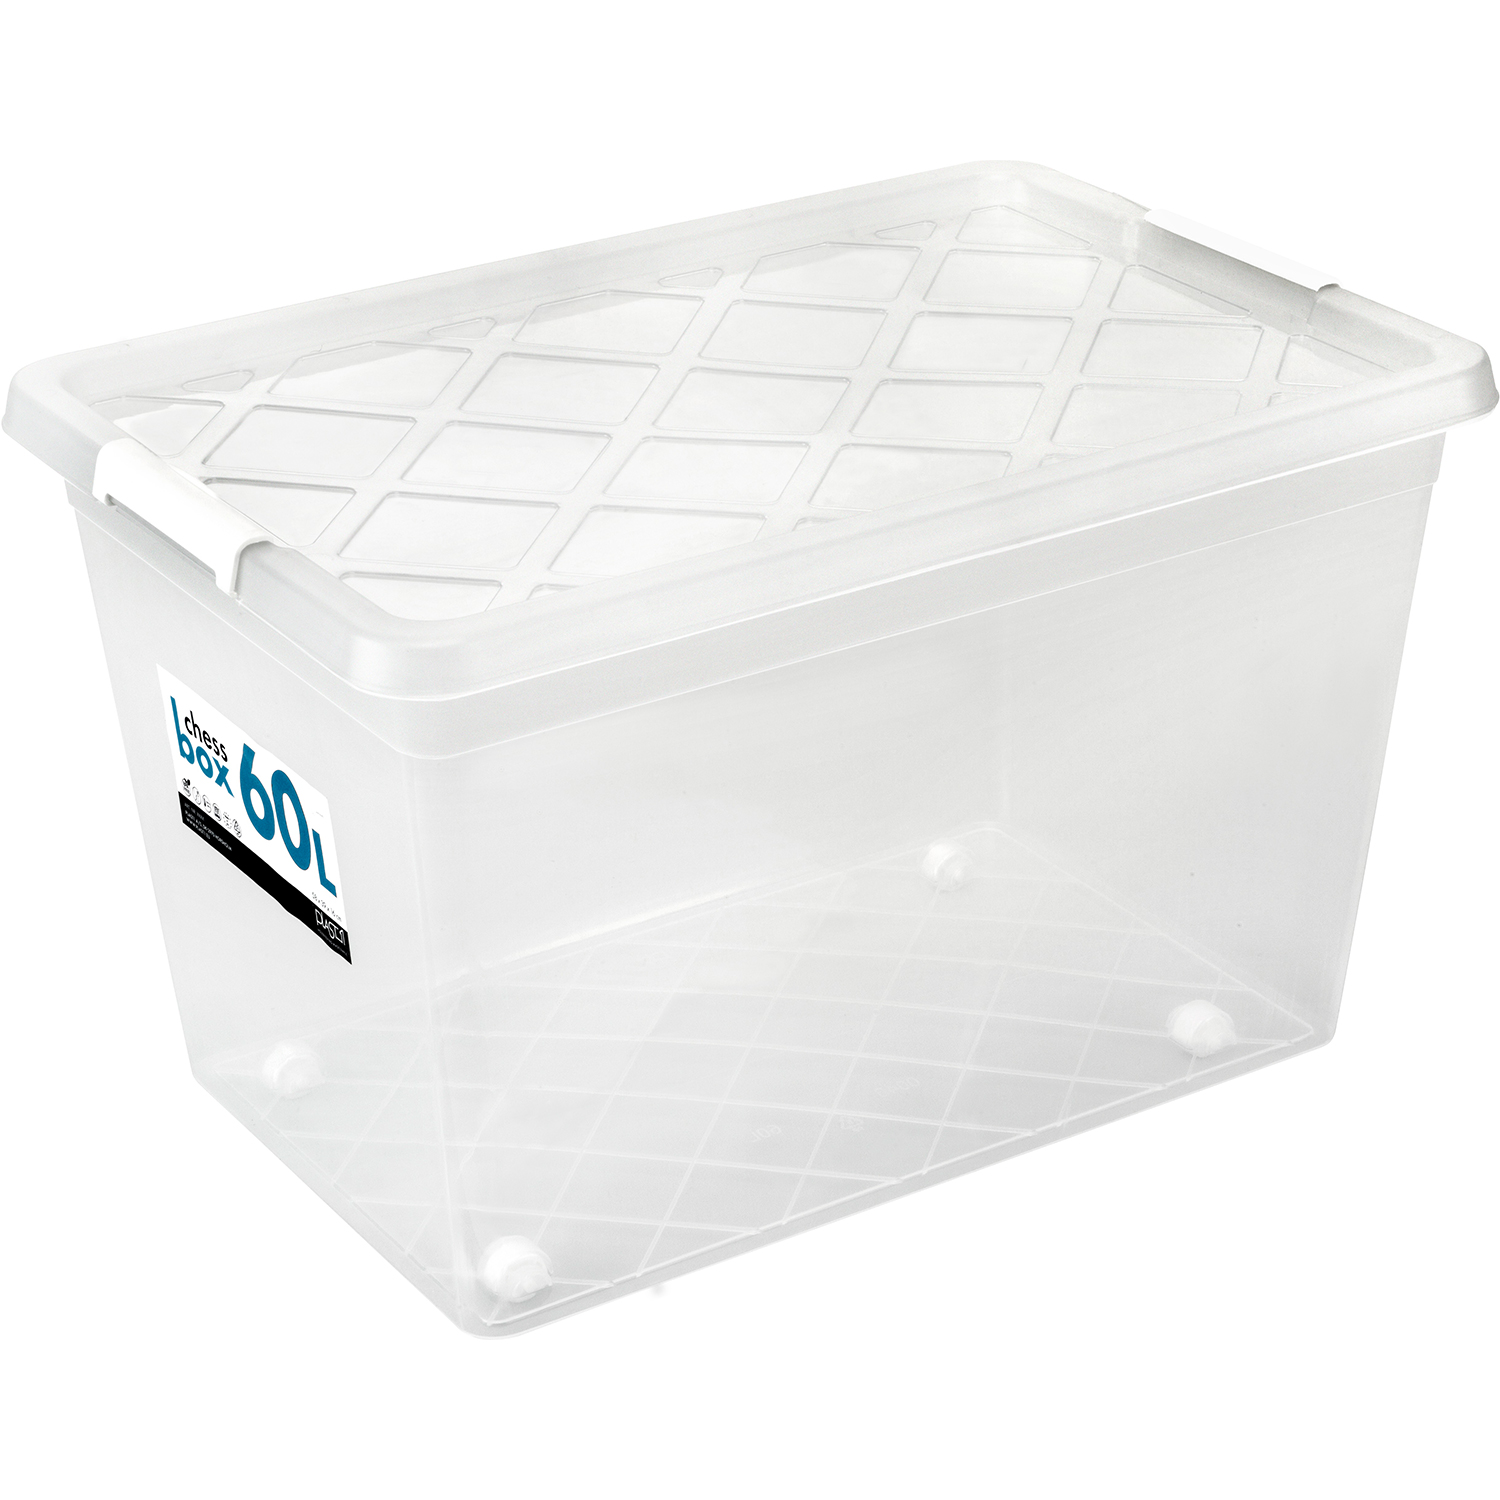 Box mit Deckel transparent lebensmittelecht 60 L Stapelbar 60 x 40